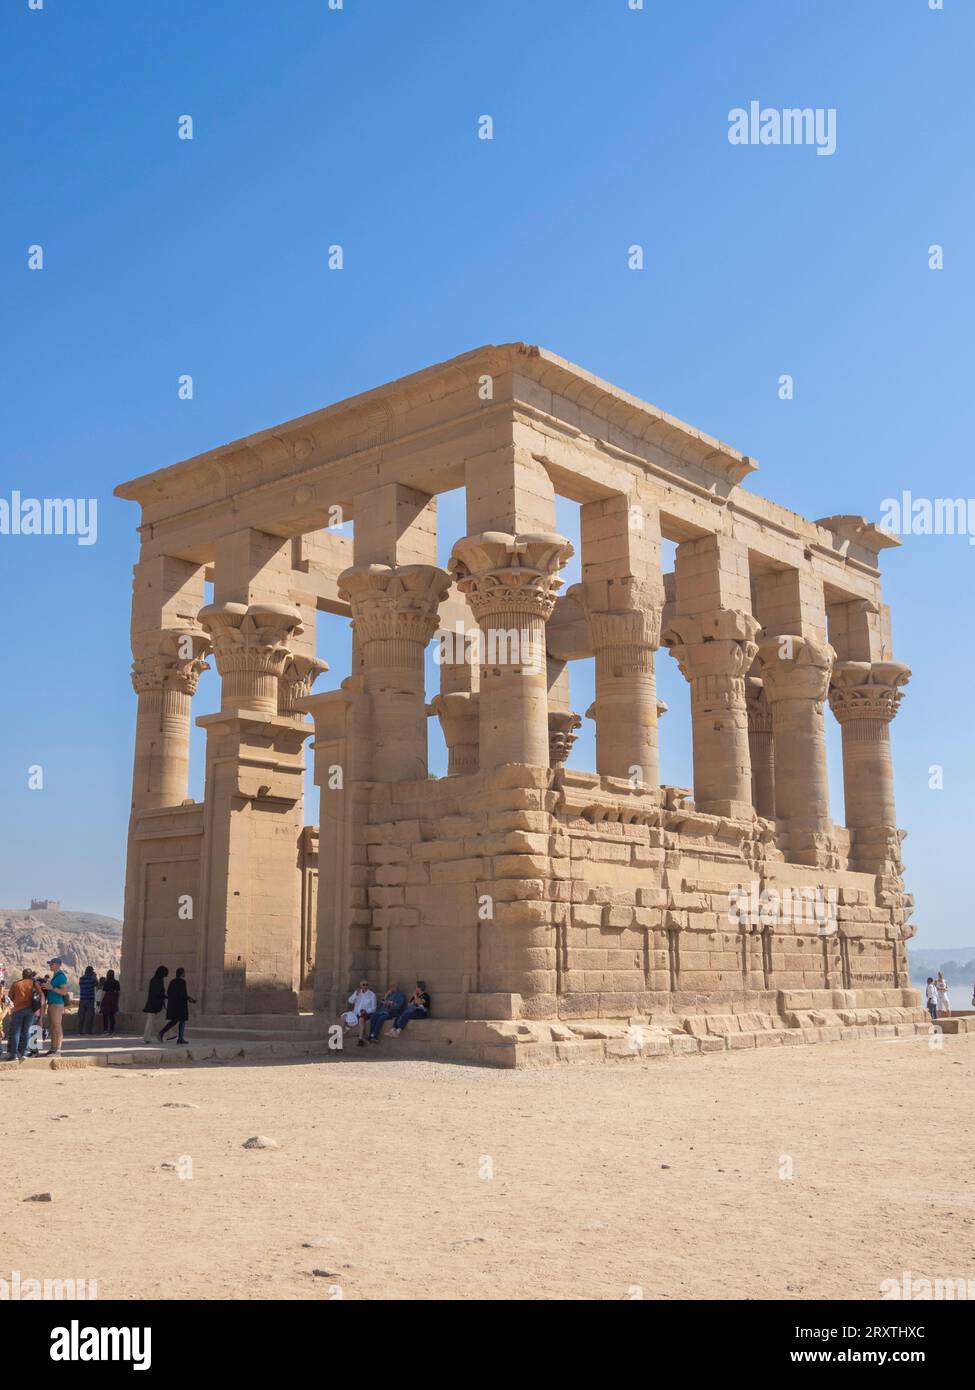 Colonne nel complesso del tempio di file, il tempio di Iside, sito patrimonio dell'umanità dell'UNESCO, attualmente sull'isola di Agilkia, Egitto, Nord Africa, Africa Foto Stock